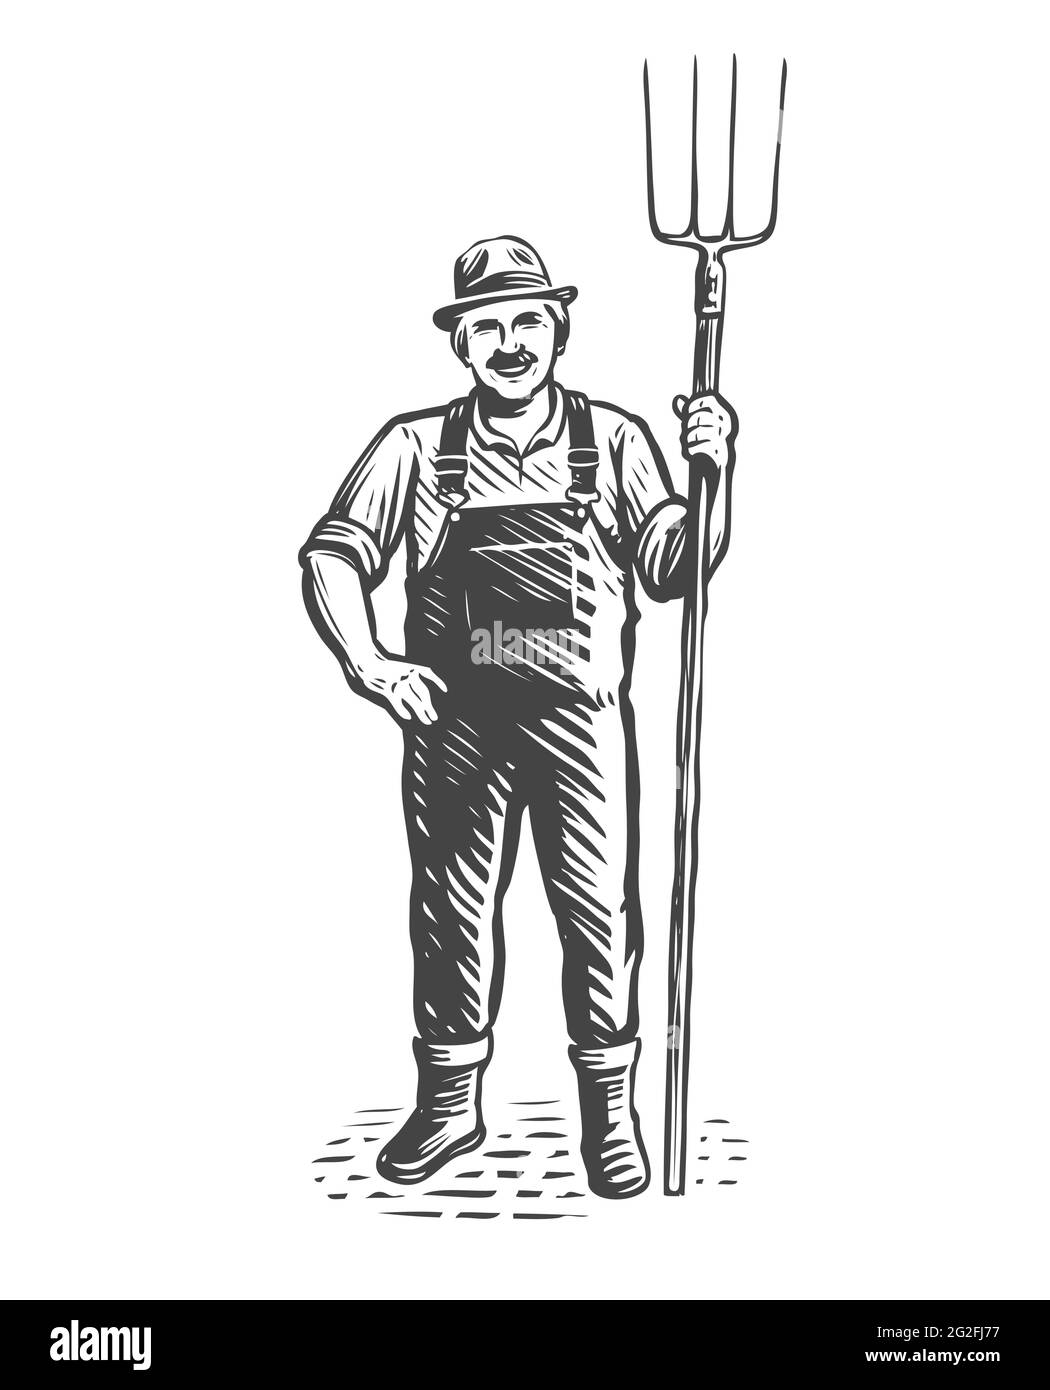 Farmer mit Pitchfork-Skizze. Landwirtschaft, Landwirtschaft Konzept. Vintage-Vektorgrafik Stock Vektor